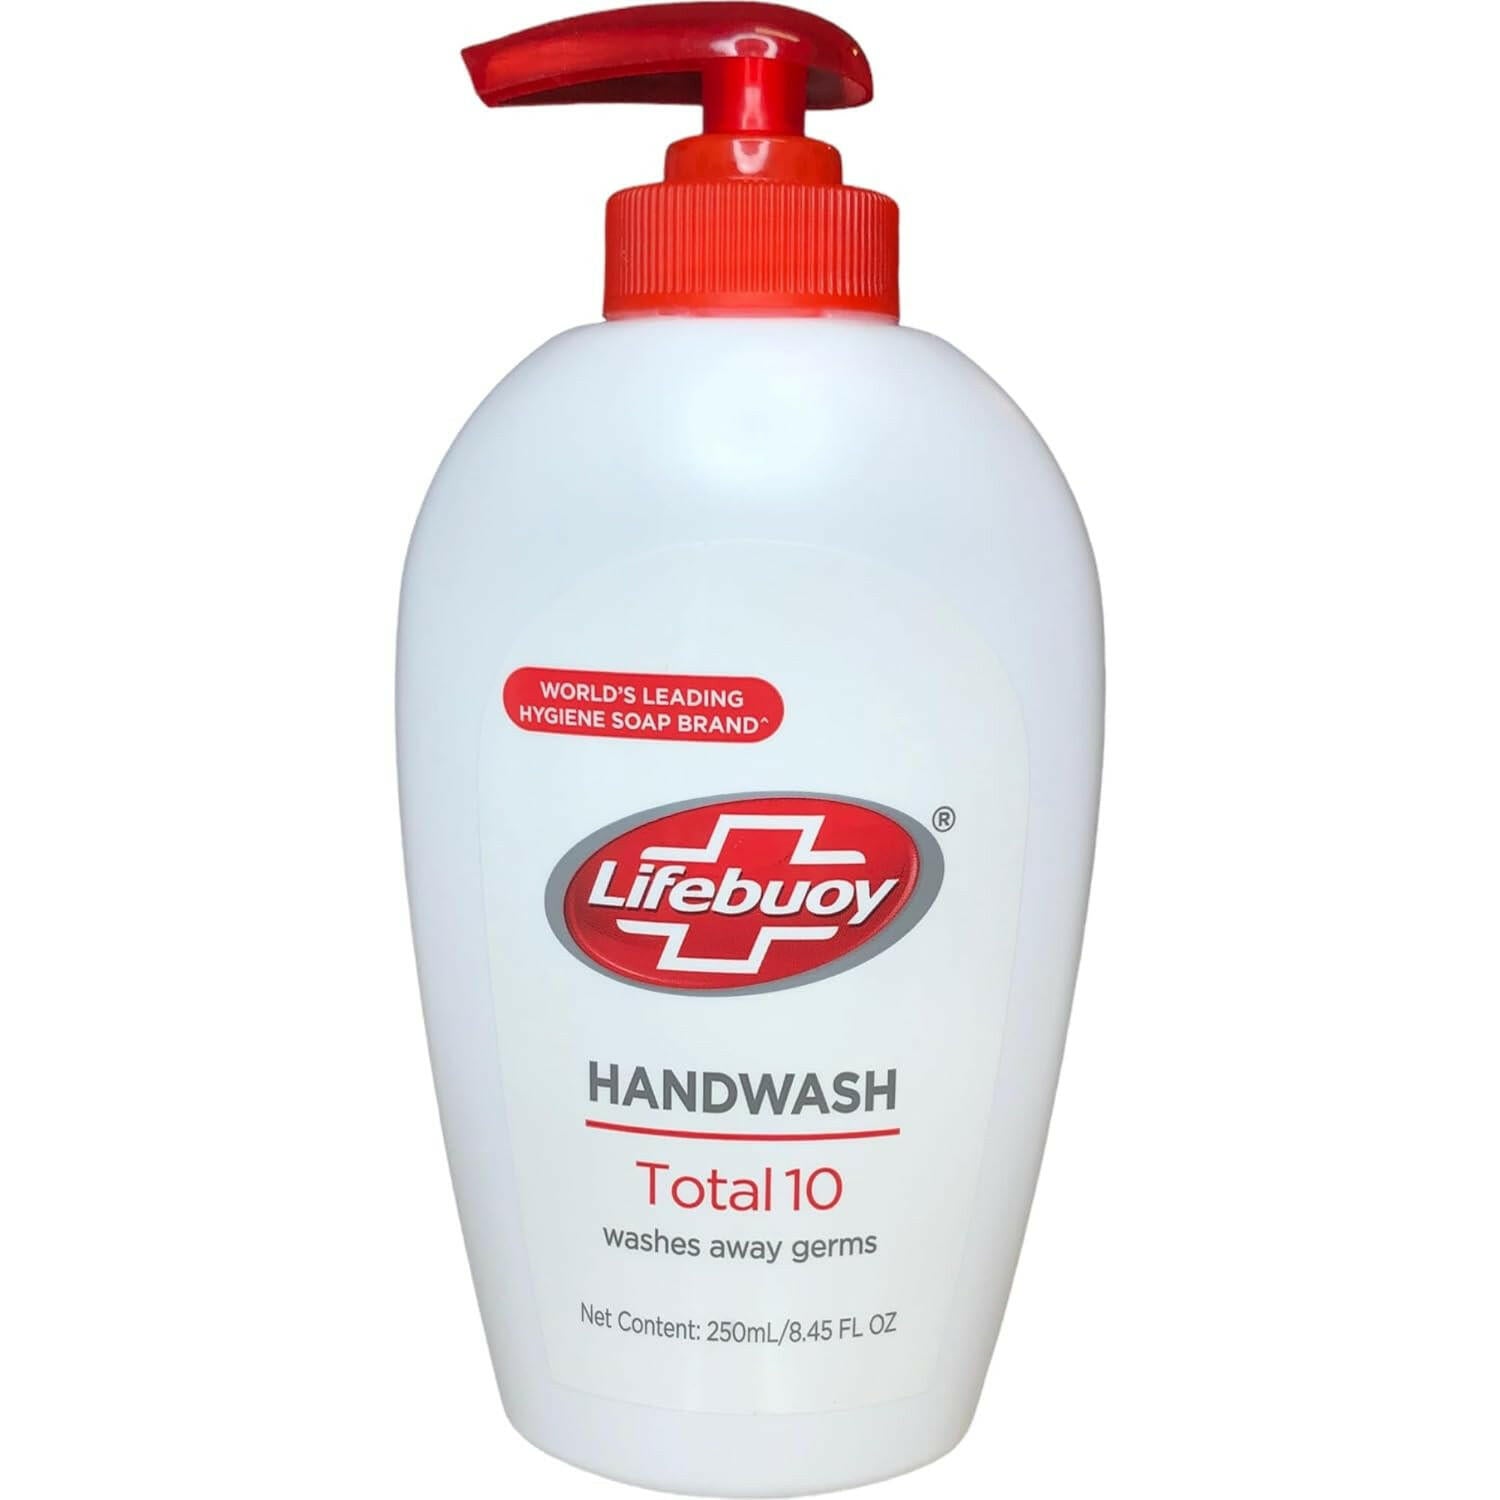 Lifebuoy Handwash Total 10 Liquid Soap 8.45oz